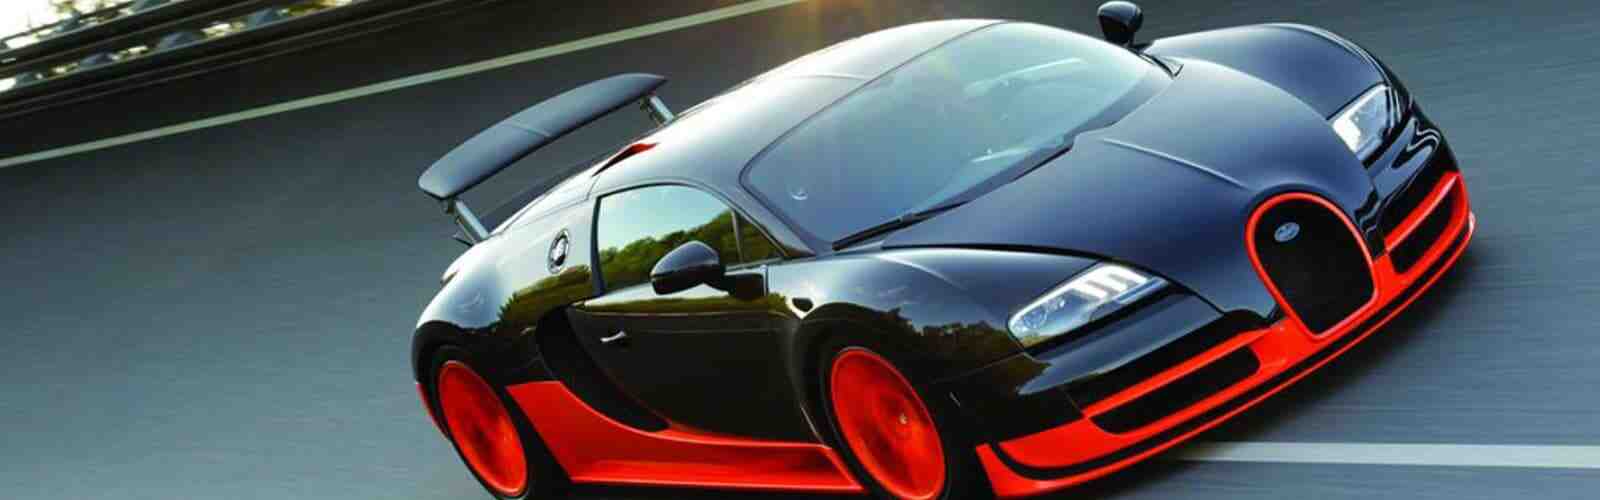 Quelle est la Bugatti la plus rapide?